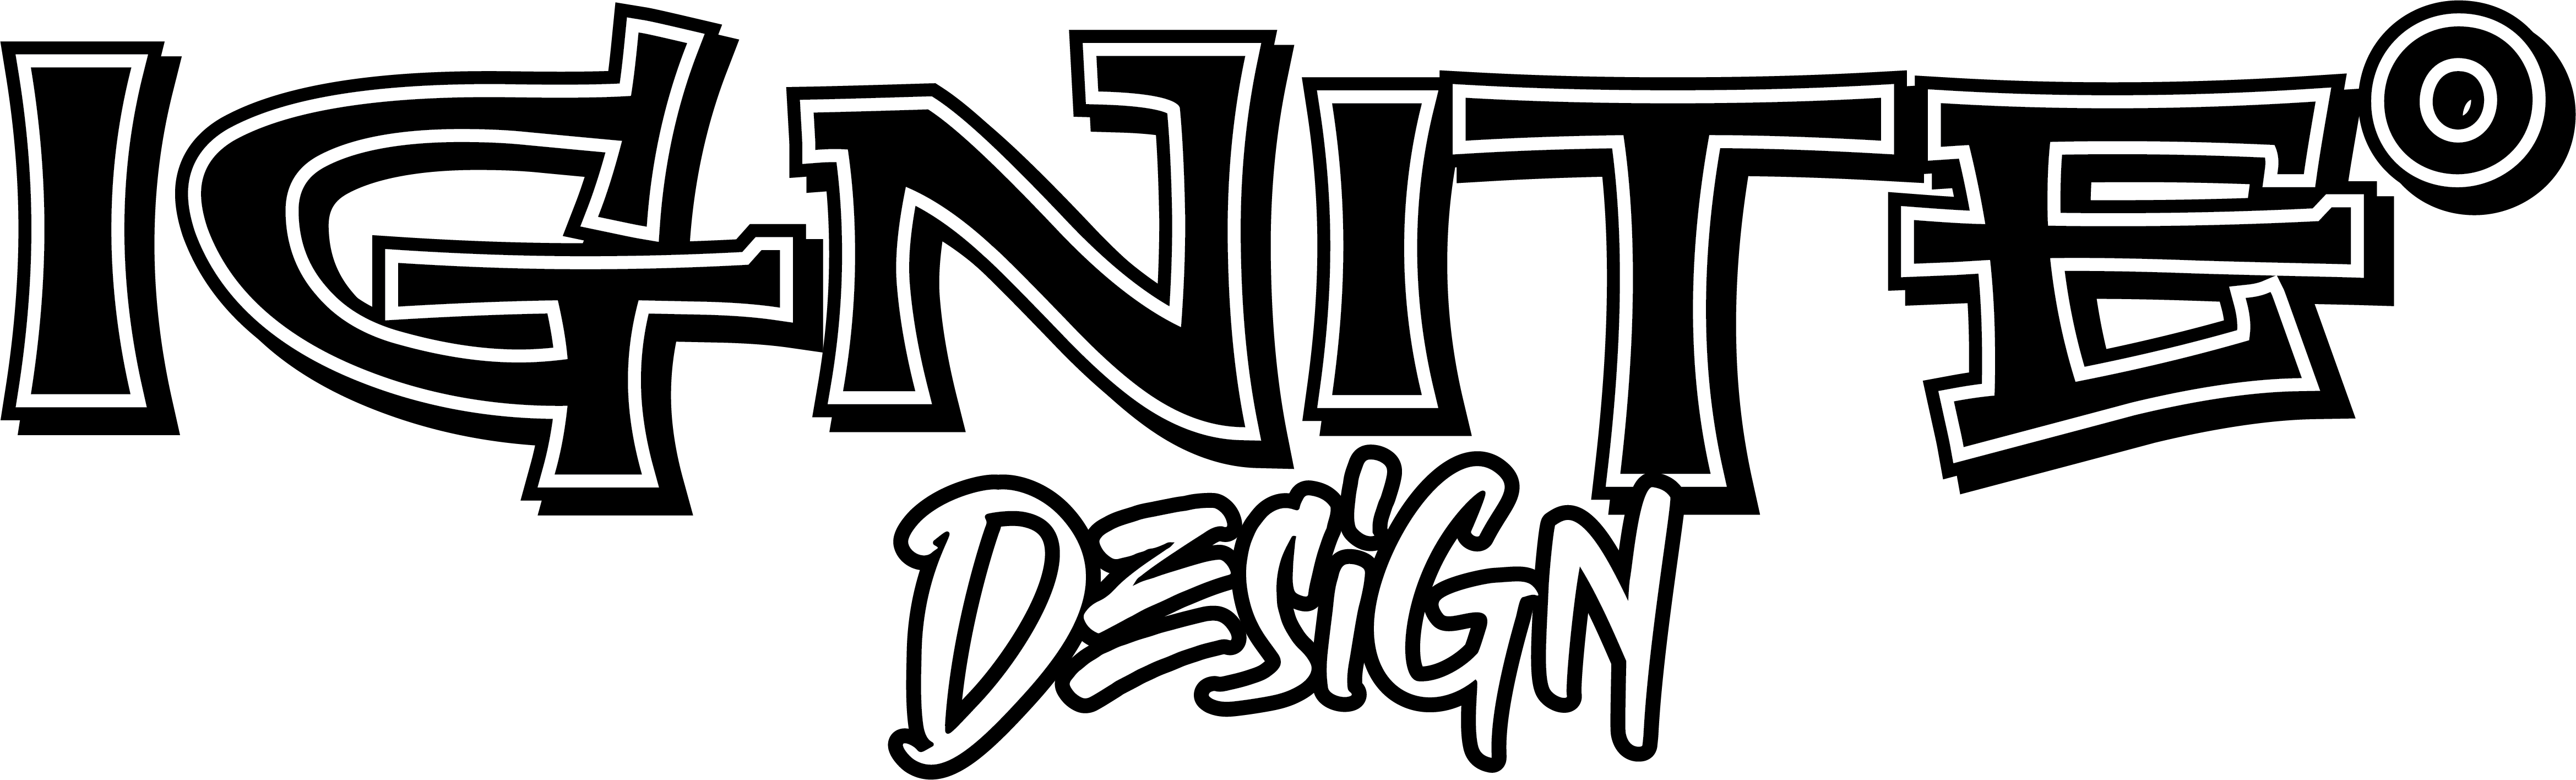 Ignite Design logo